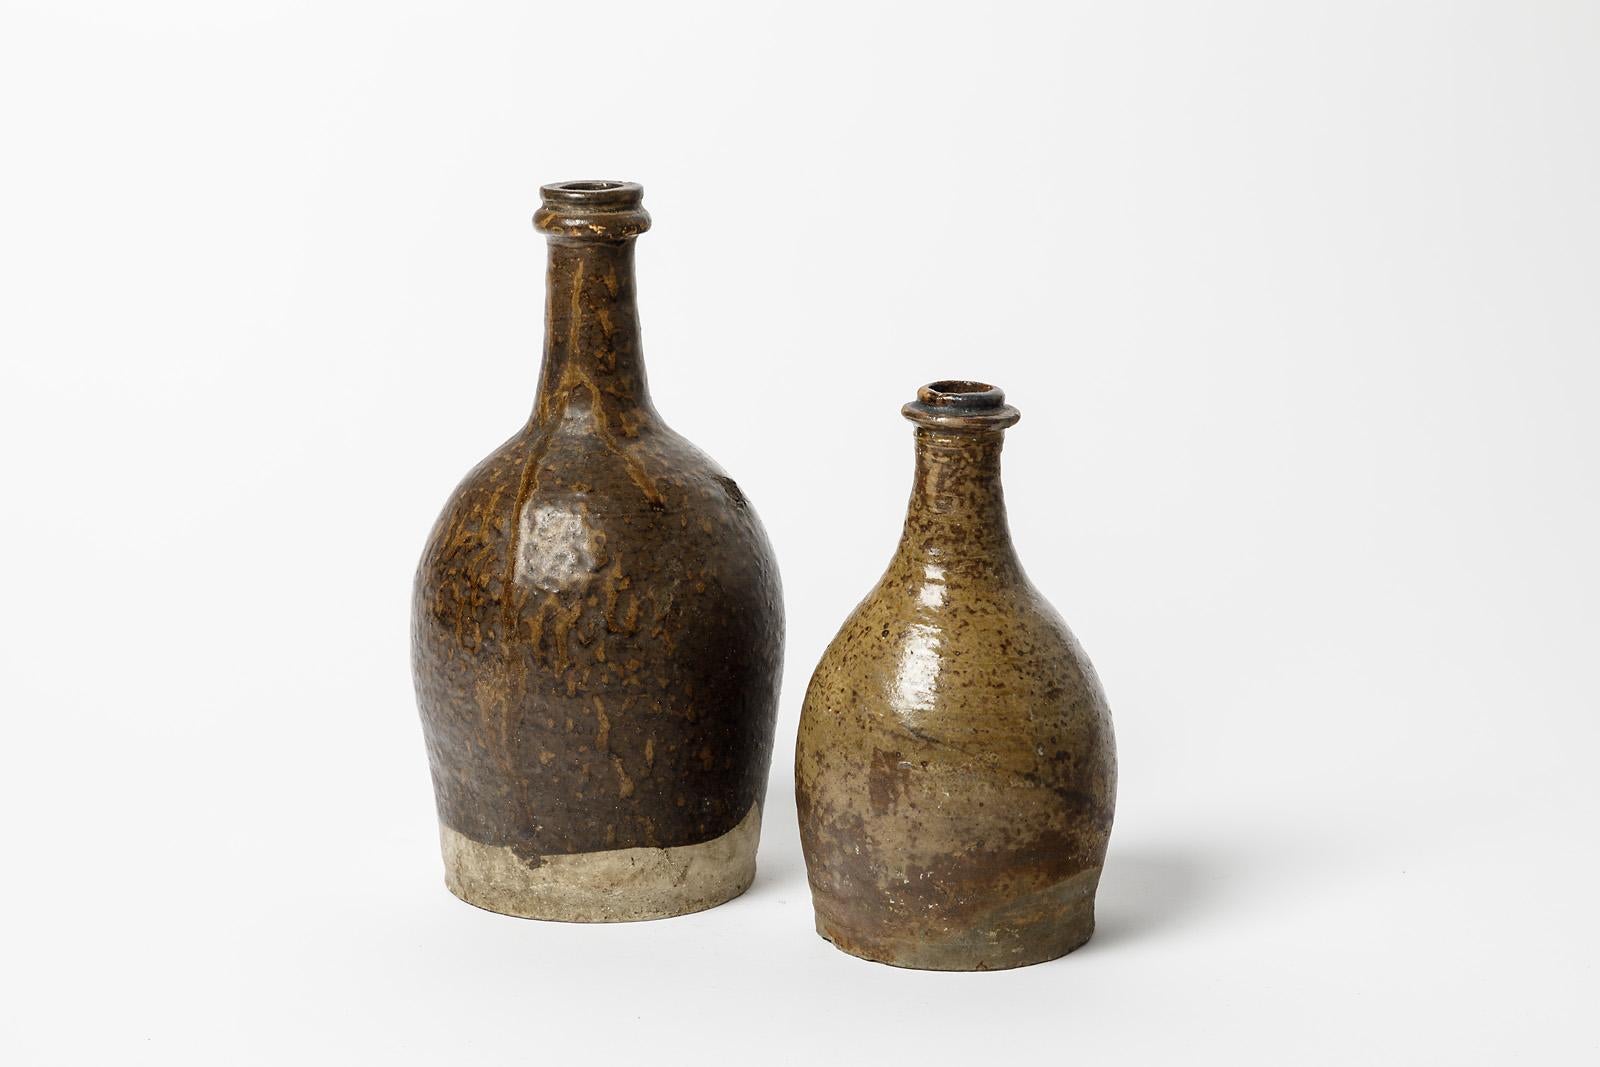 La Borne - Frankreich

Realisiert um 1850

Paar Keramikflaschen aus Steingut aus dem 19.

Einzelstücke

Original guter Zustand

Nummer eins 
Höhe 25 cm
groß 12 cm

Nummer zwei
Höhe 19 cm
groß 10 cm